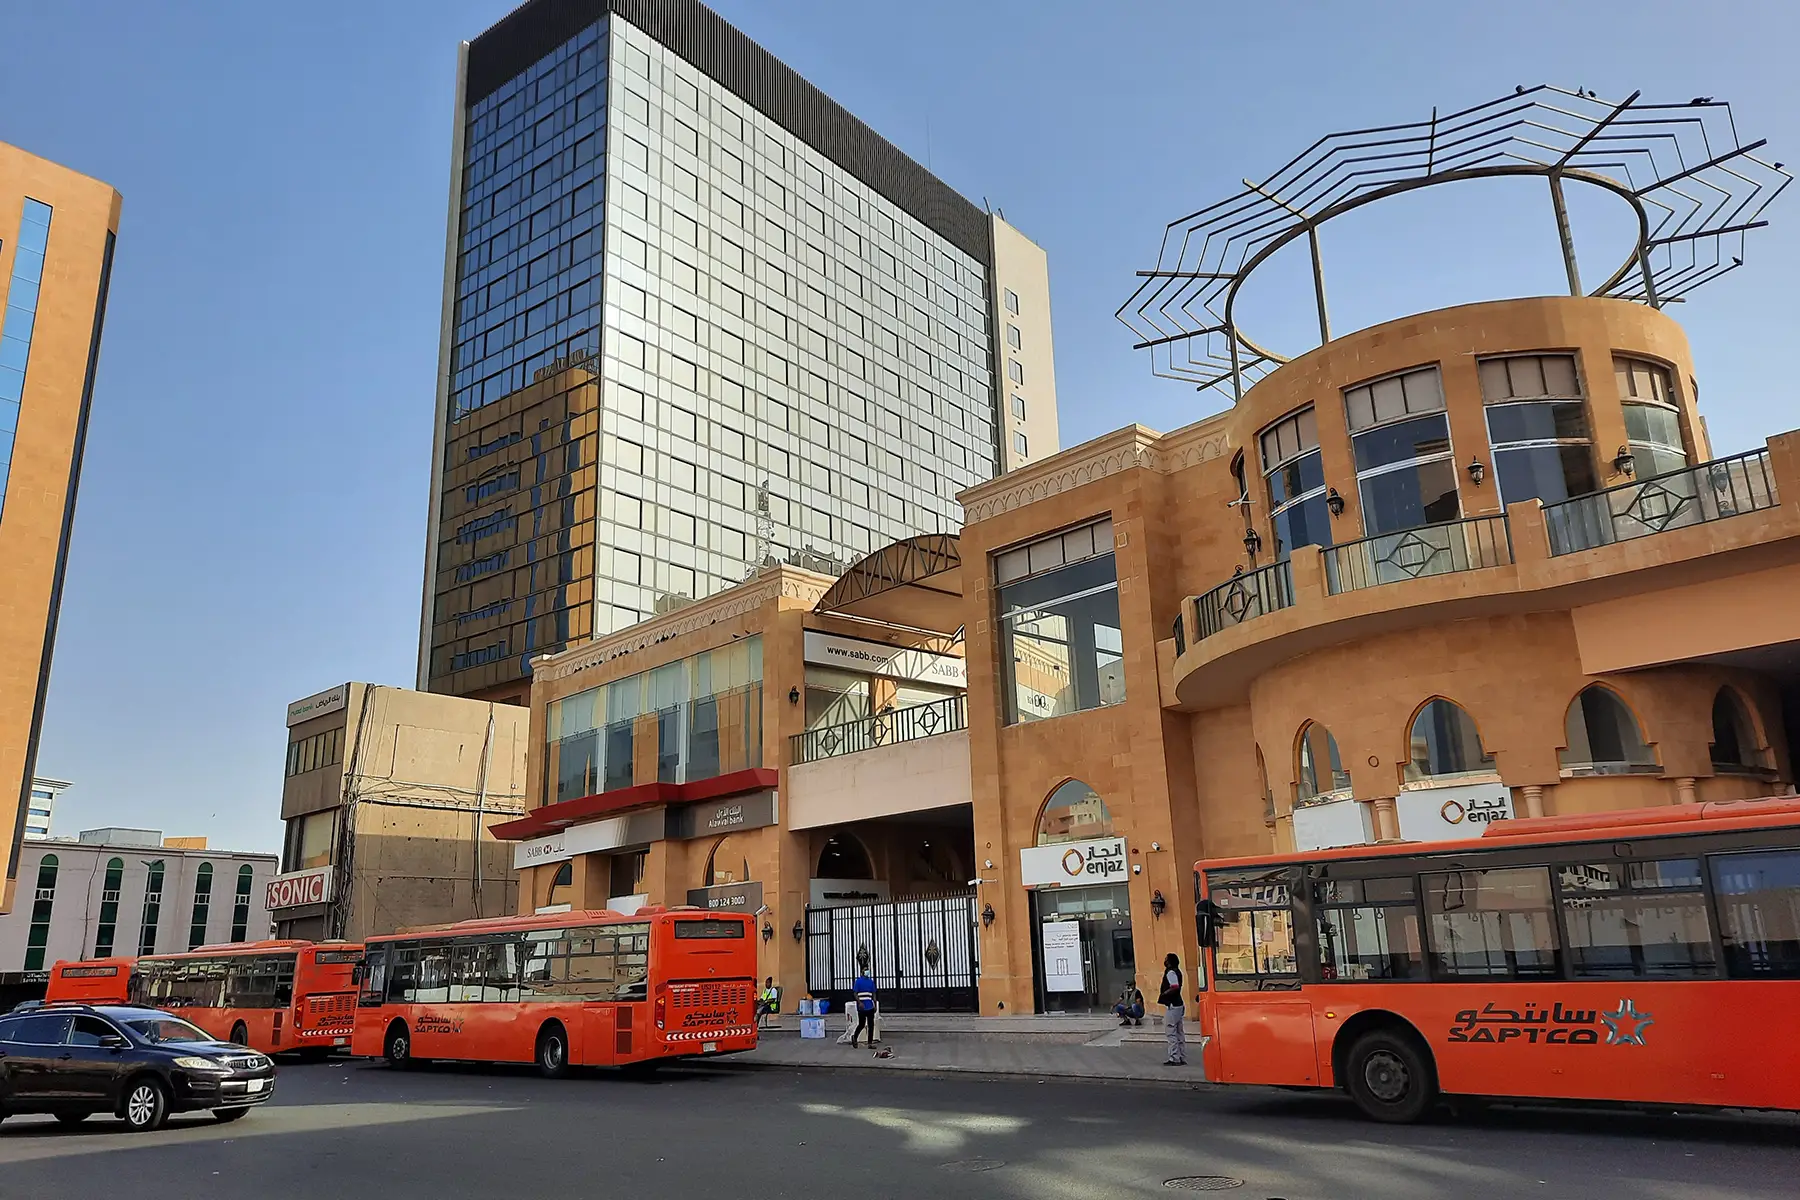 Public buses in Jeddah, Saudi Arabia